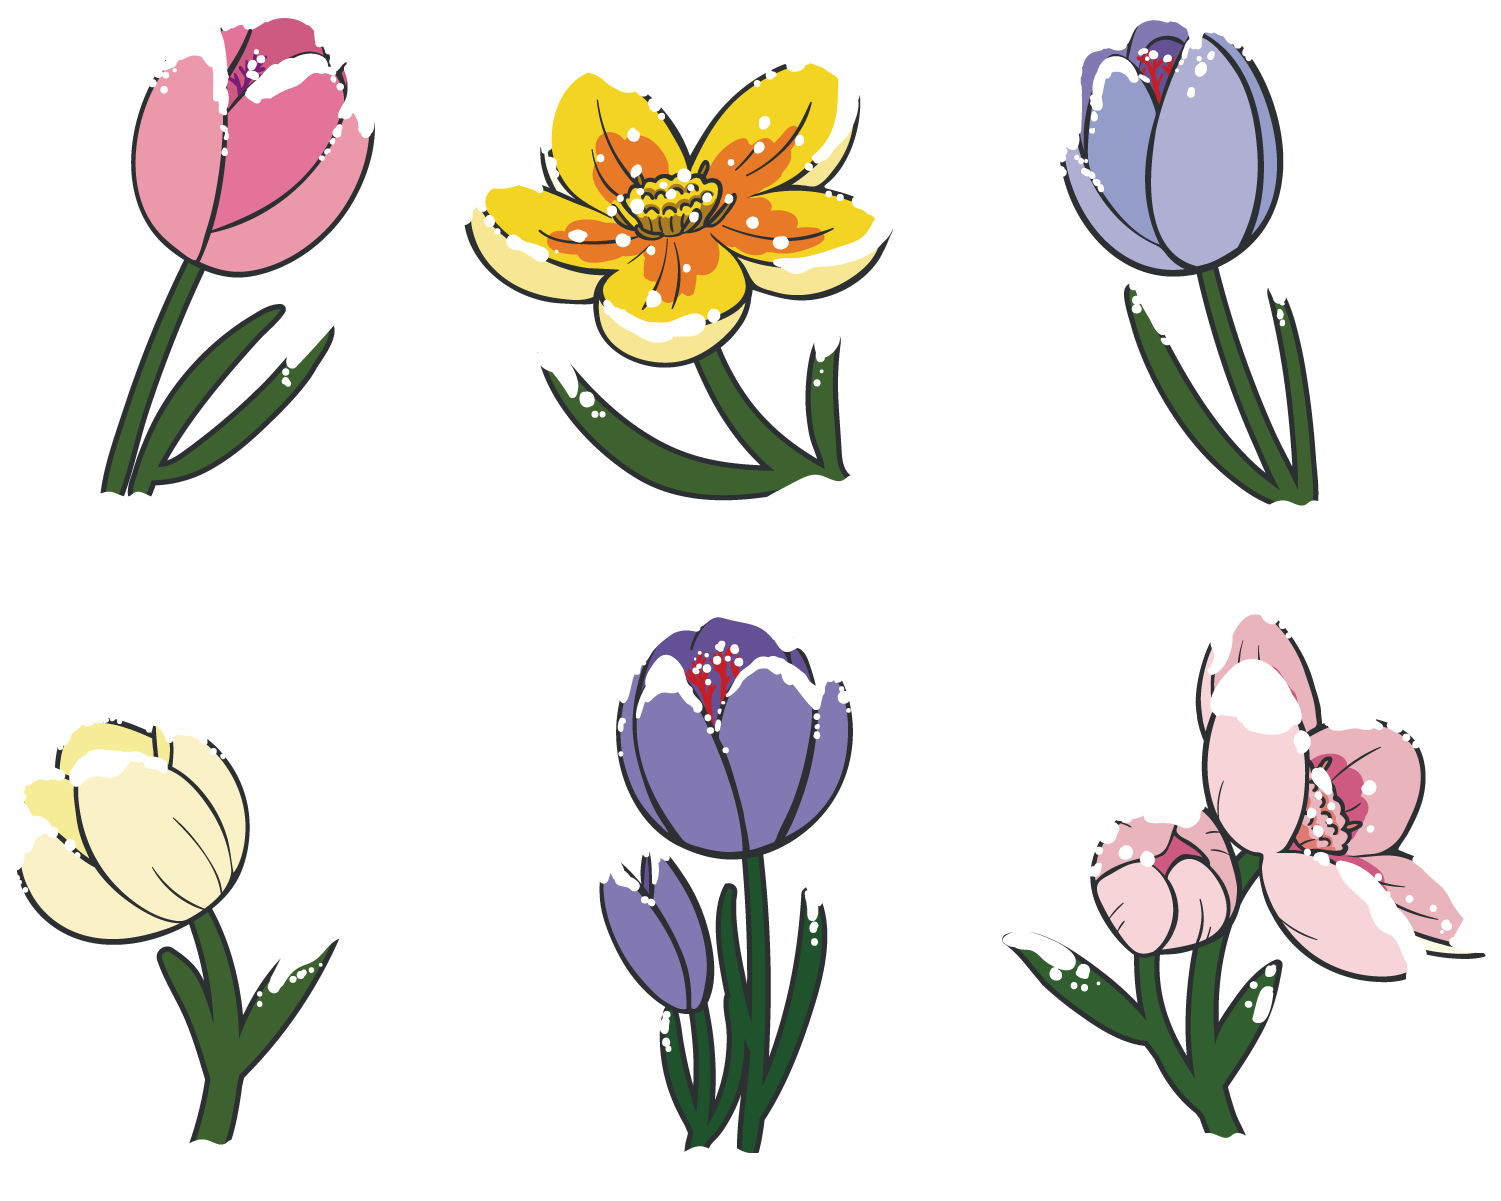 Tulip Floral Design Flower Clip Art - Tulip Floral Design Flower Clip Art (1500x1500)